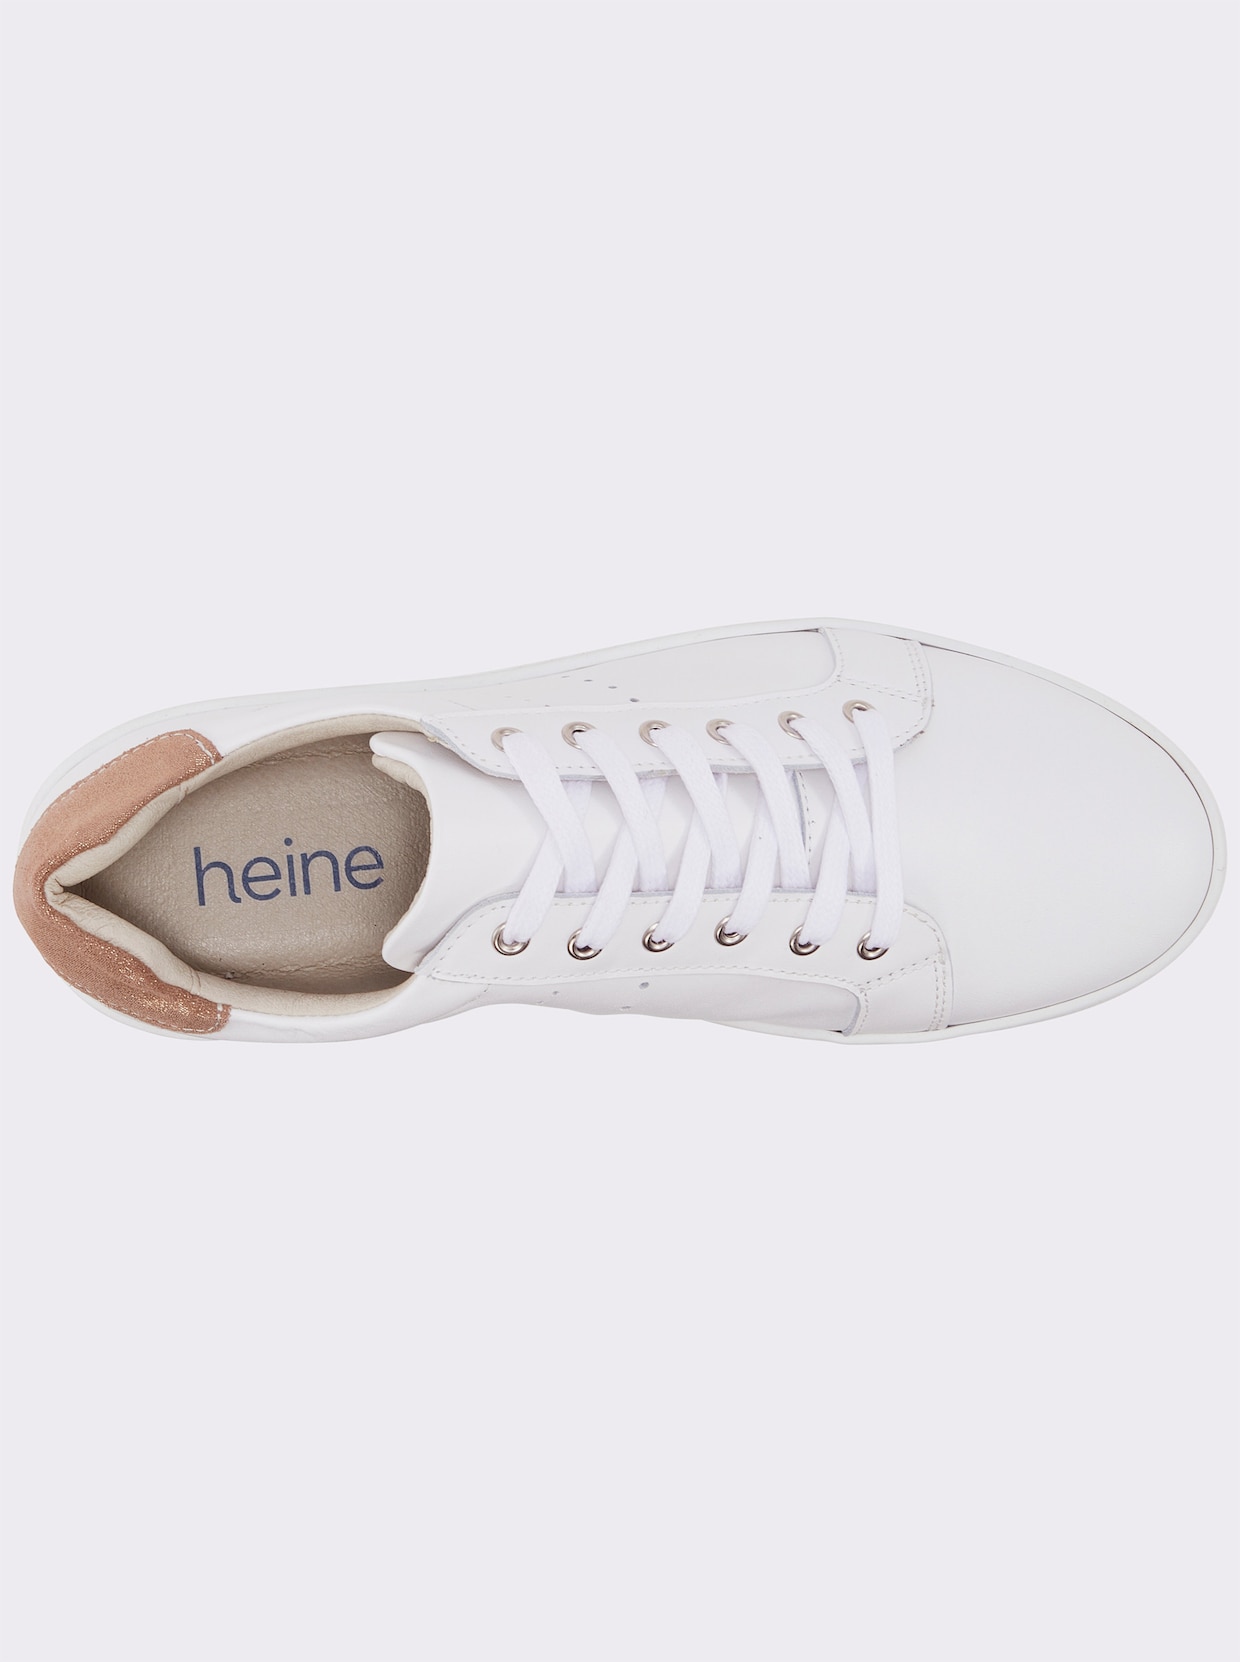 heine Sneaker - weiss-taupe